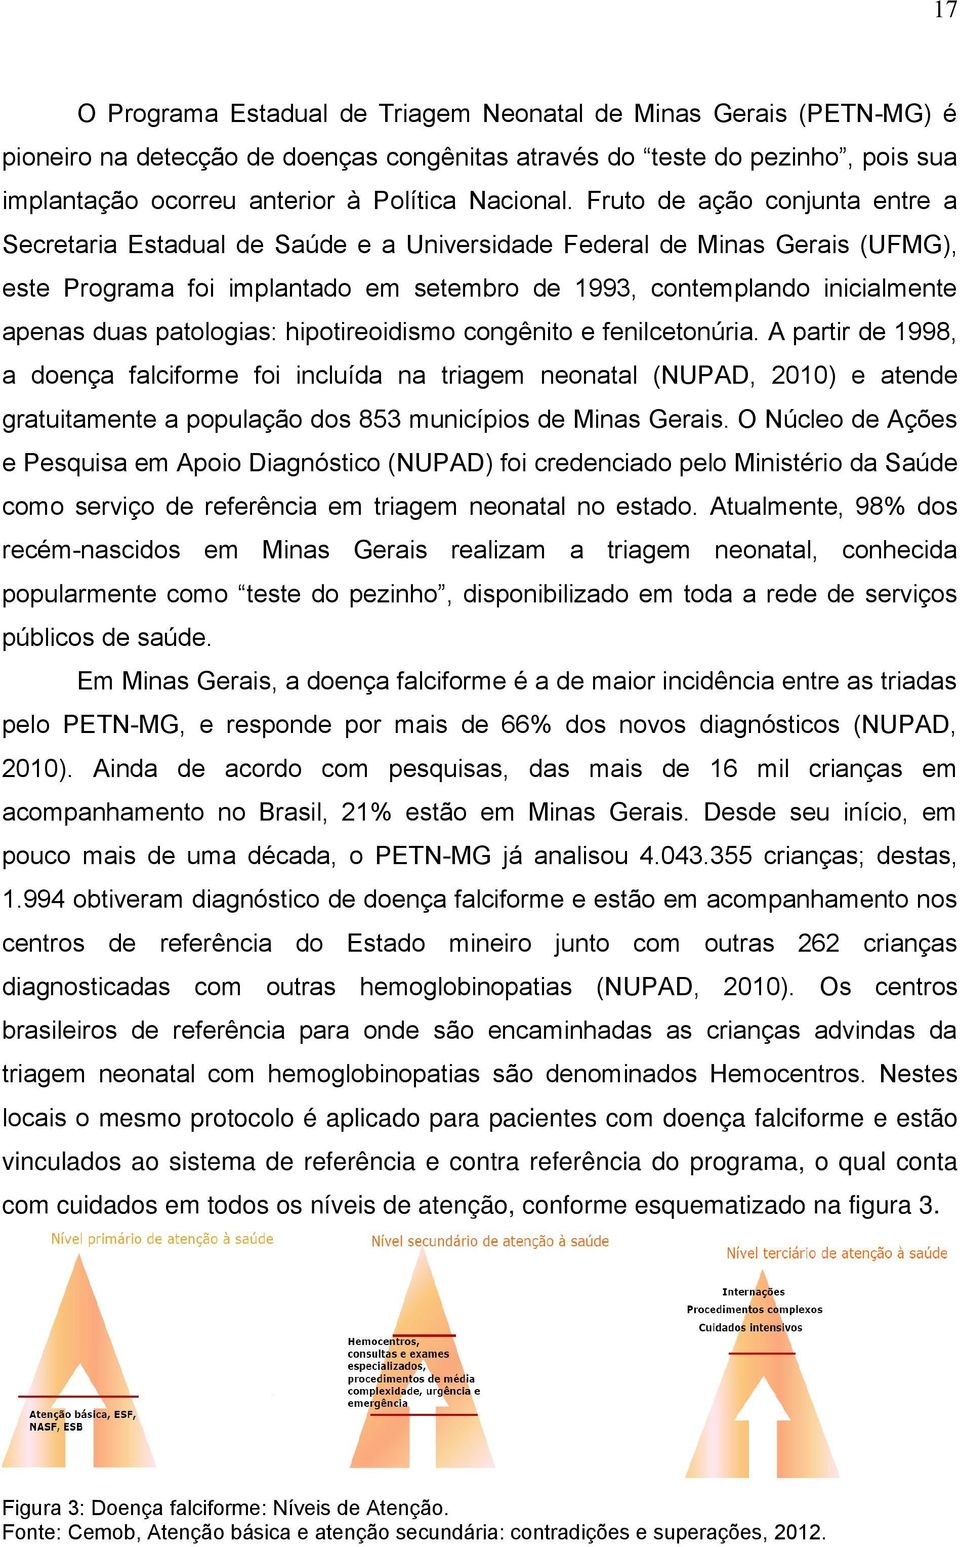 Fruto de ação conjunta entre a Secretaria Estadual de Saúde e a Universidade Federal de Minas Gerais (UFMG), este Programa foi implantado em setembro de 1993, contemplando inicialmente apenas duas